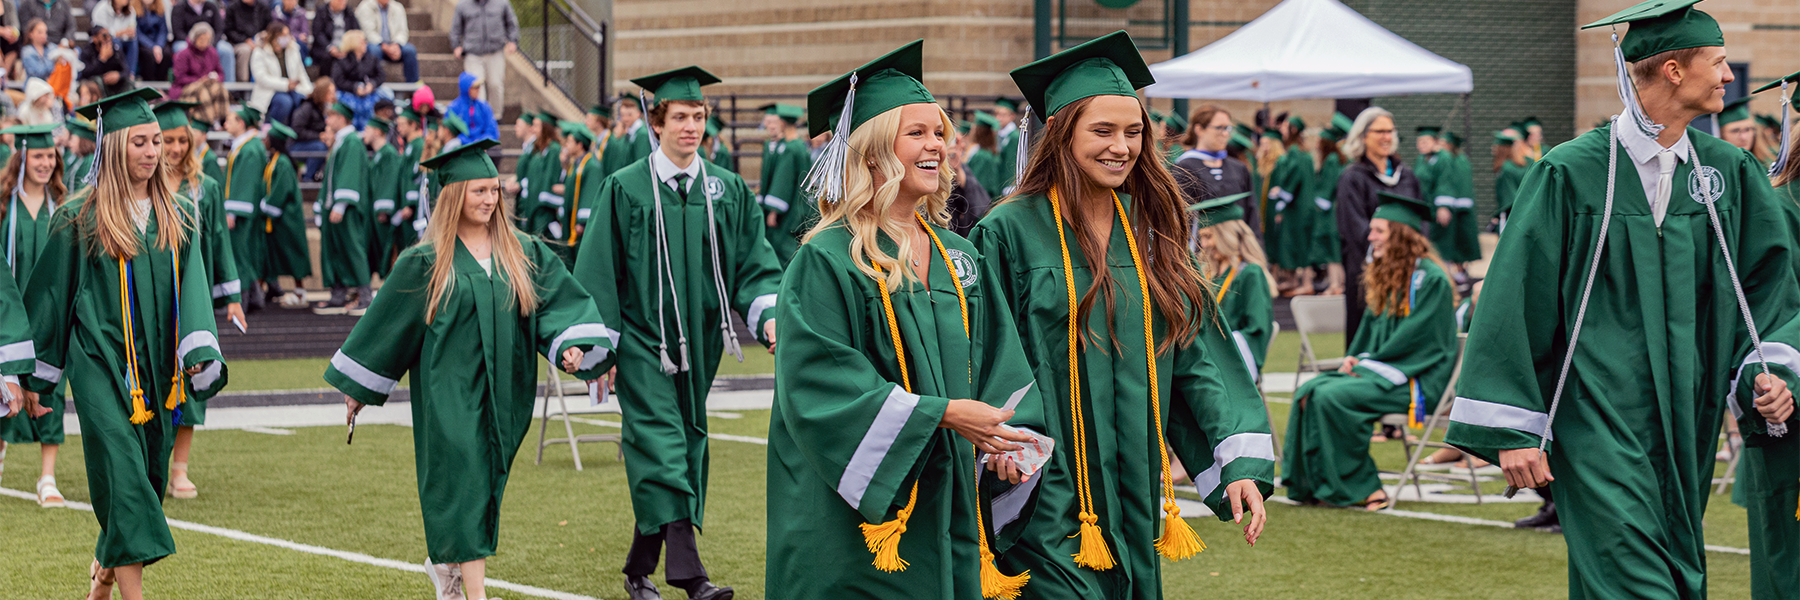 Students walking and smiling at graduation